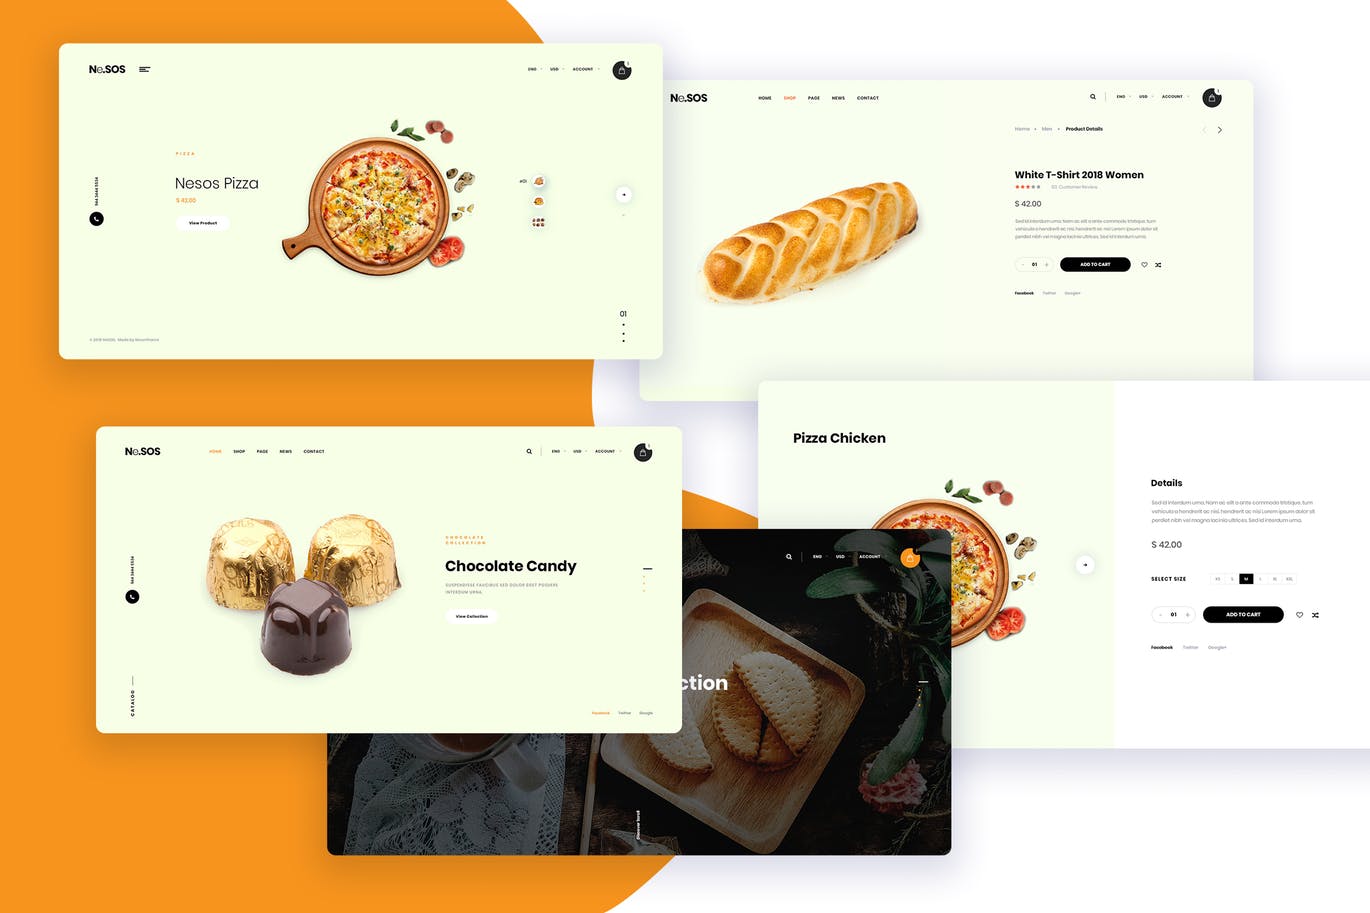 面包烘焙品牌网上商城设计PSD模板 Ne28 – bakery store Ecommerce PSD template插图